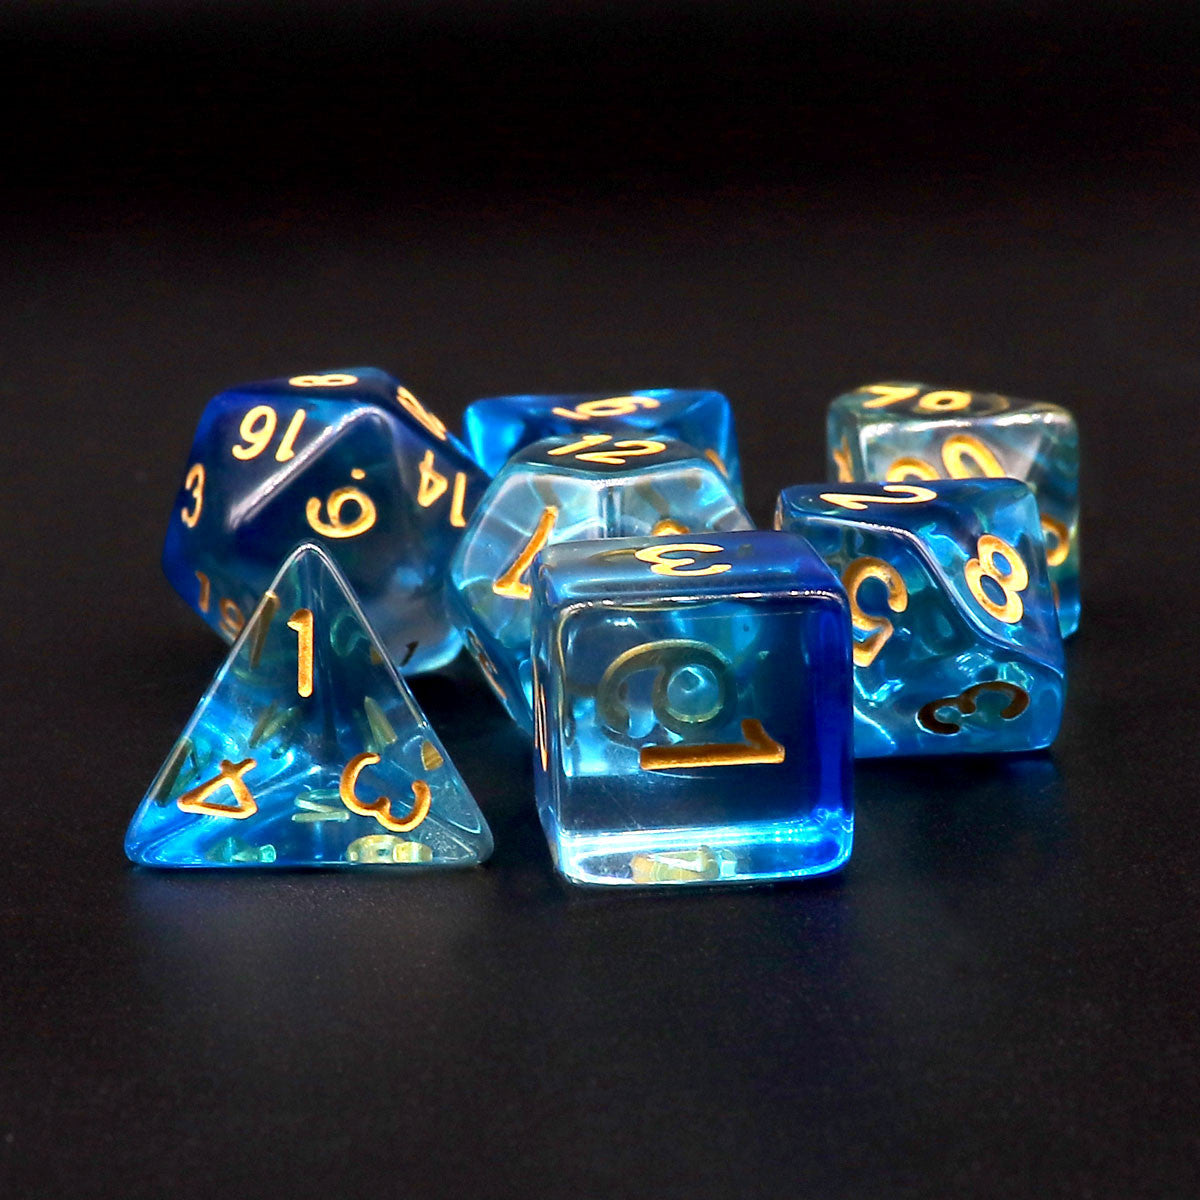 blue dice, clear dice, dnd dice, rpg dice, polyhedral dice, translucent dice, vapor dice, wisp dice, ink dice, swirl dice